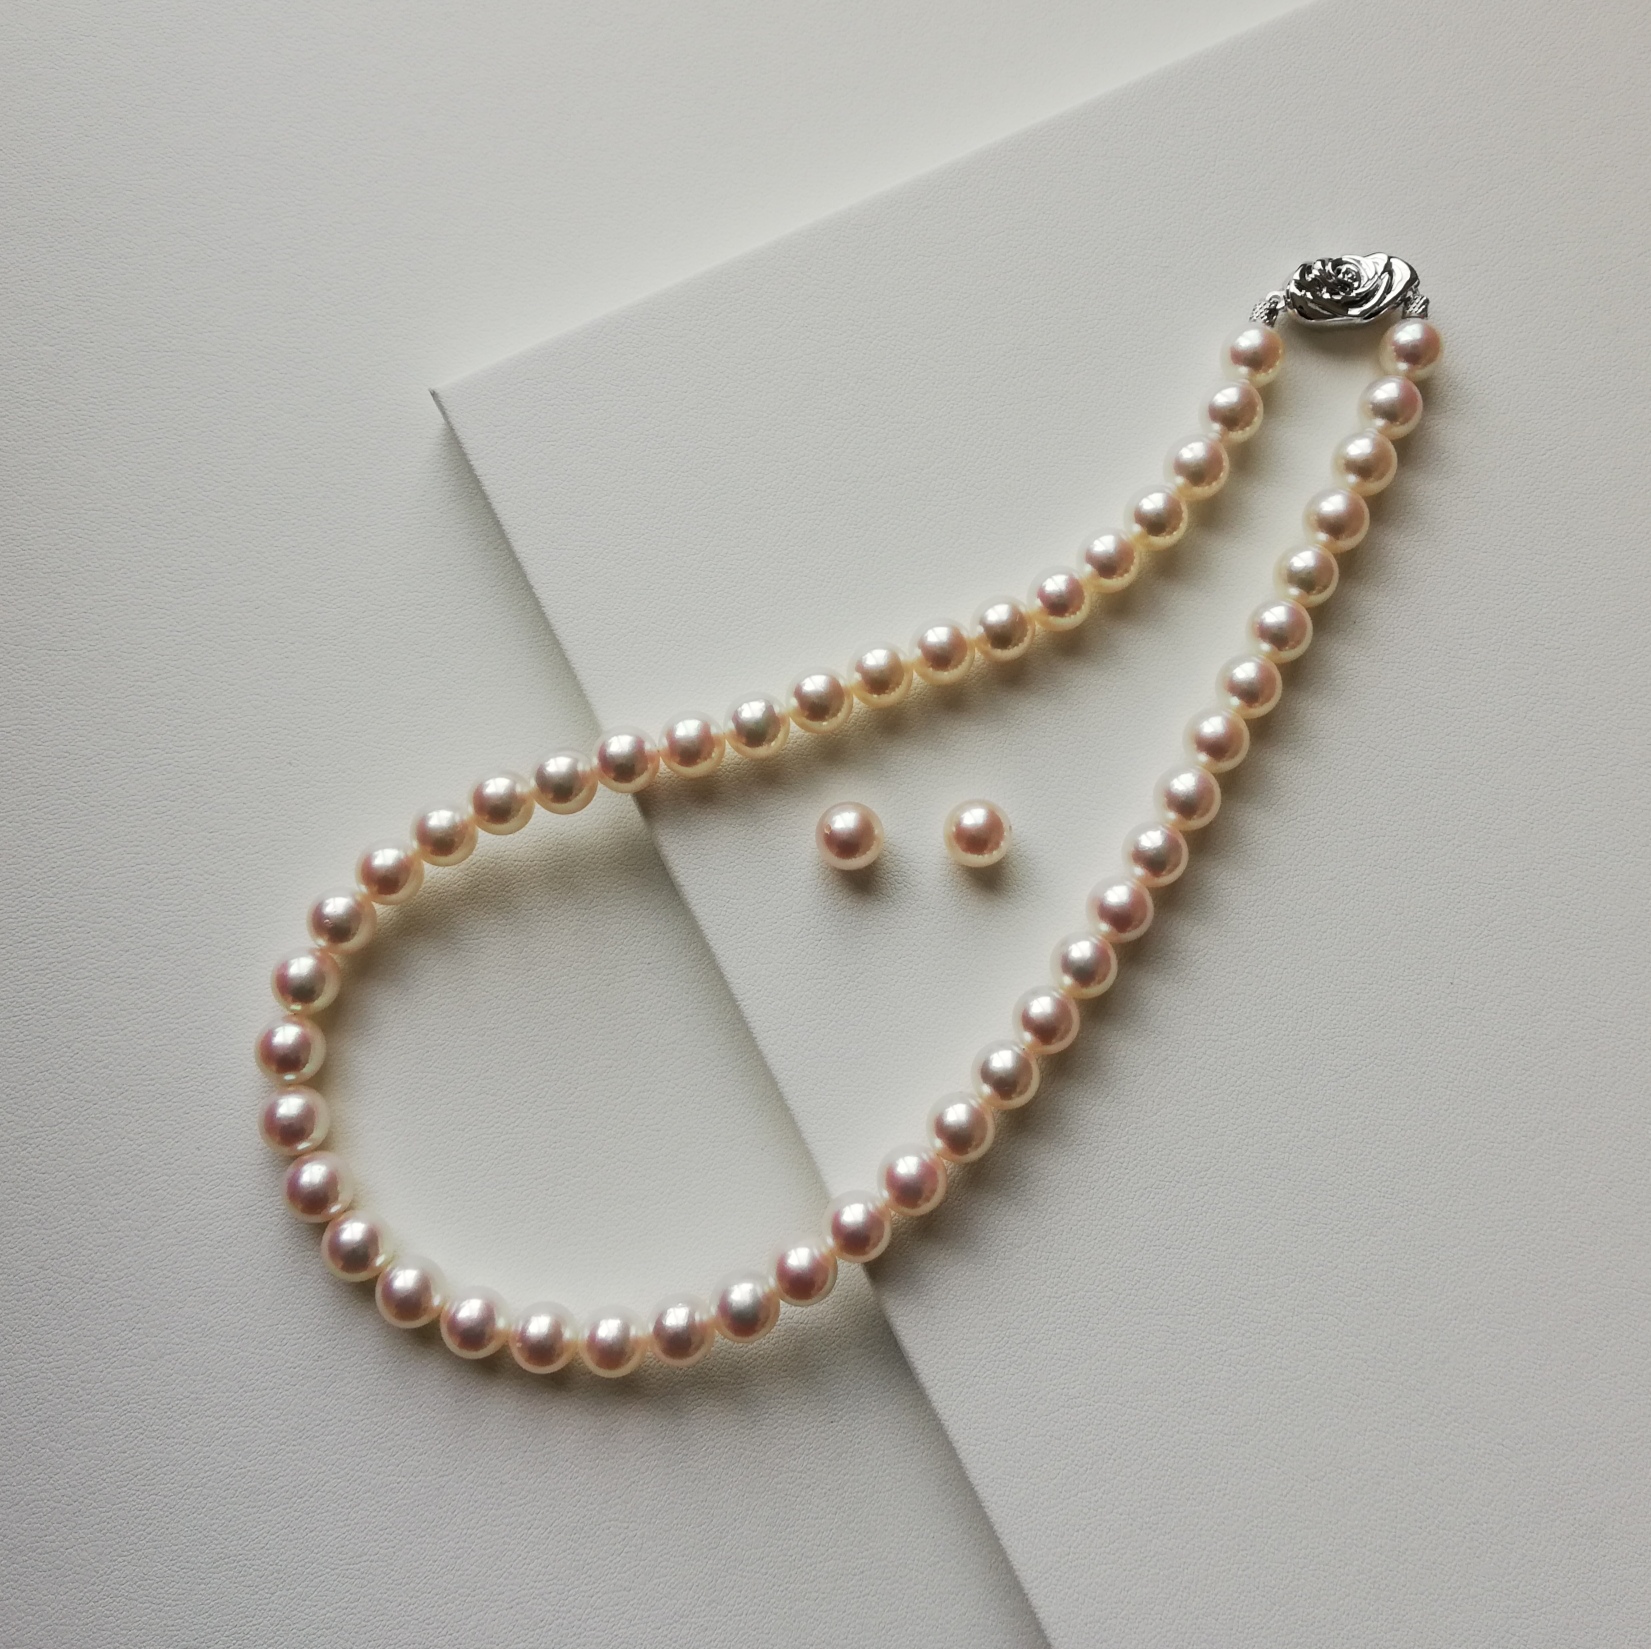 あこや真珠 ネックレス・ピアス セット 9.0-8.5mm長さ約43cm - ネックレス